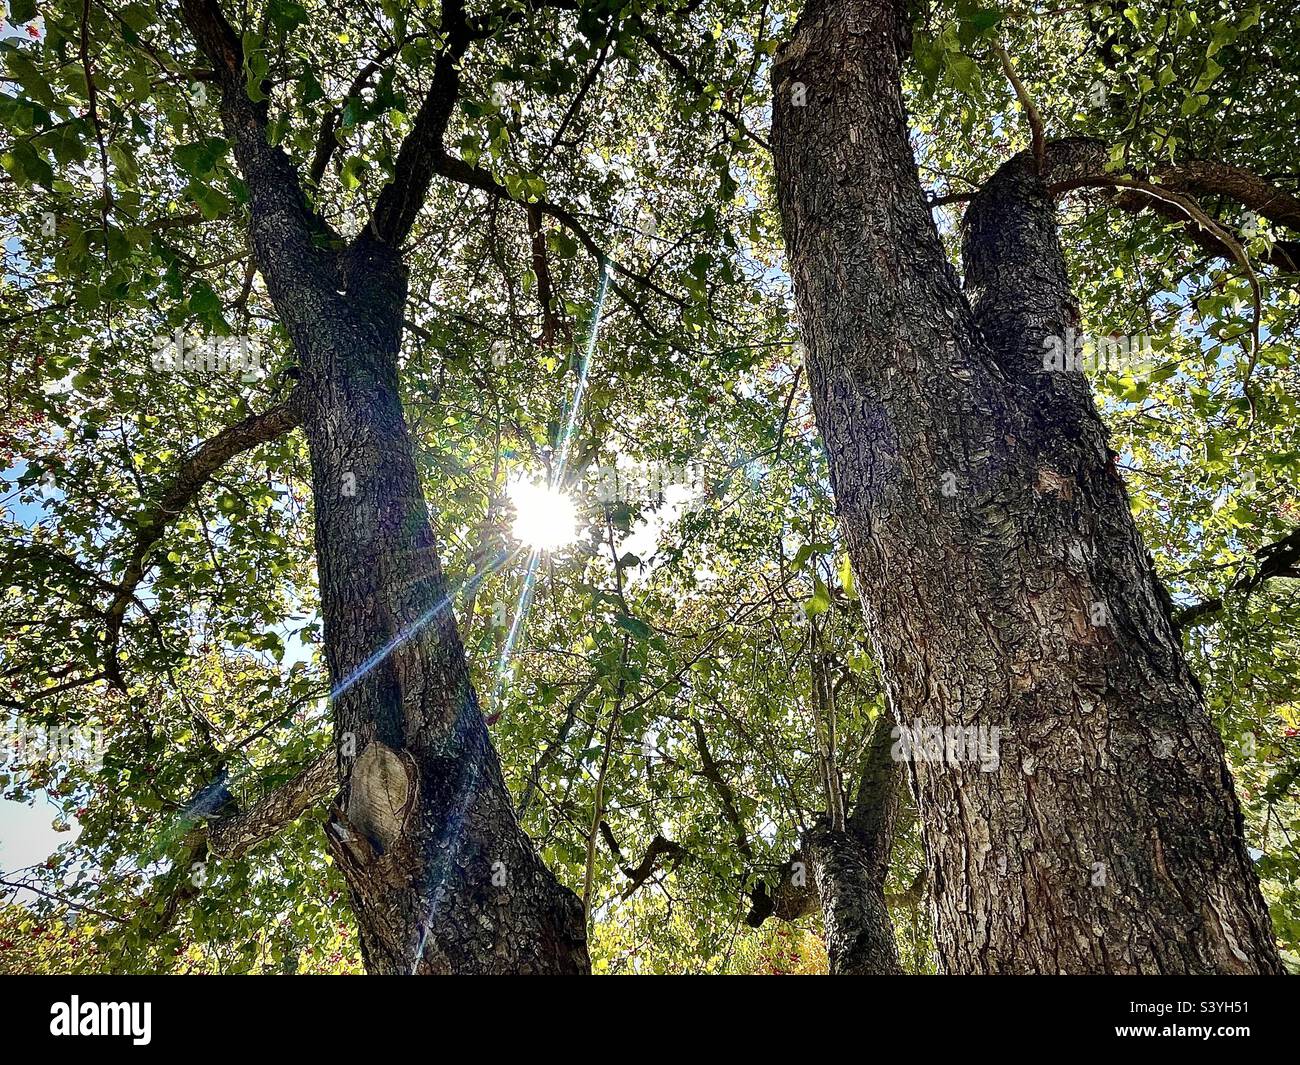 Während der Herbstsaison in Utah, USA, schießt er um die Mittagszeit unter diesem Weißdornbaum auf. Die Sonne scheint durch die Äste, Blätter und Beeren, während die Baumstämme nach oben steigen. Stockfoto